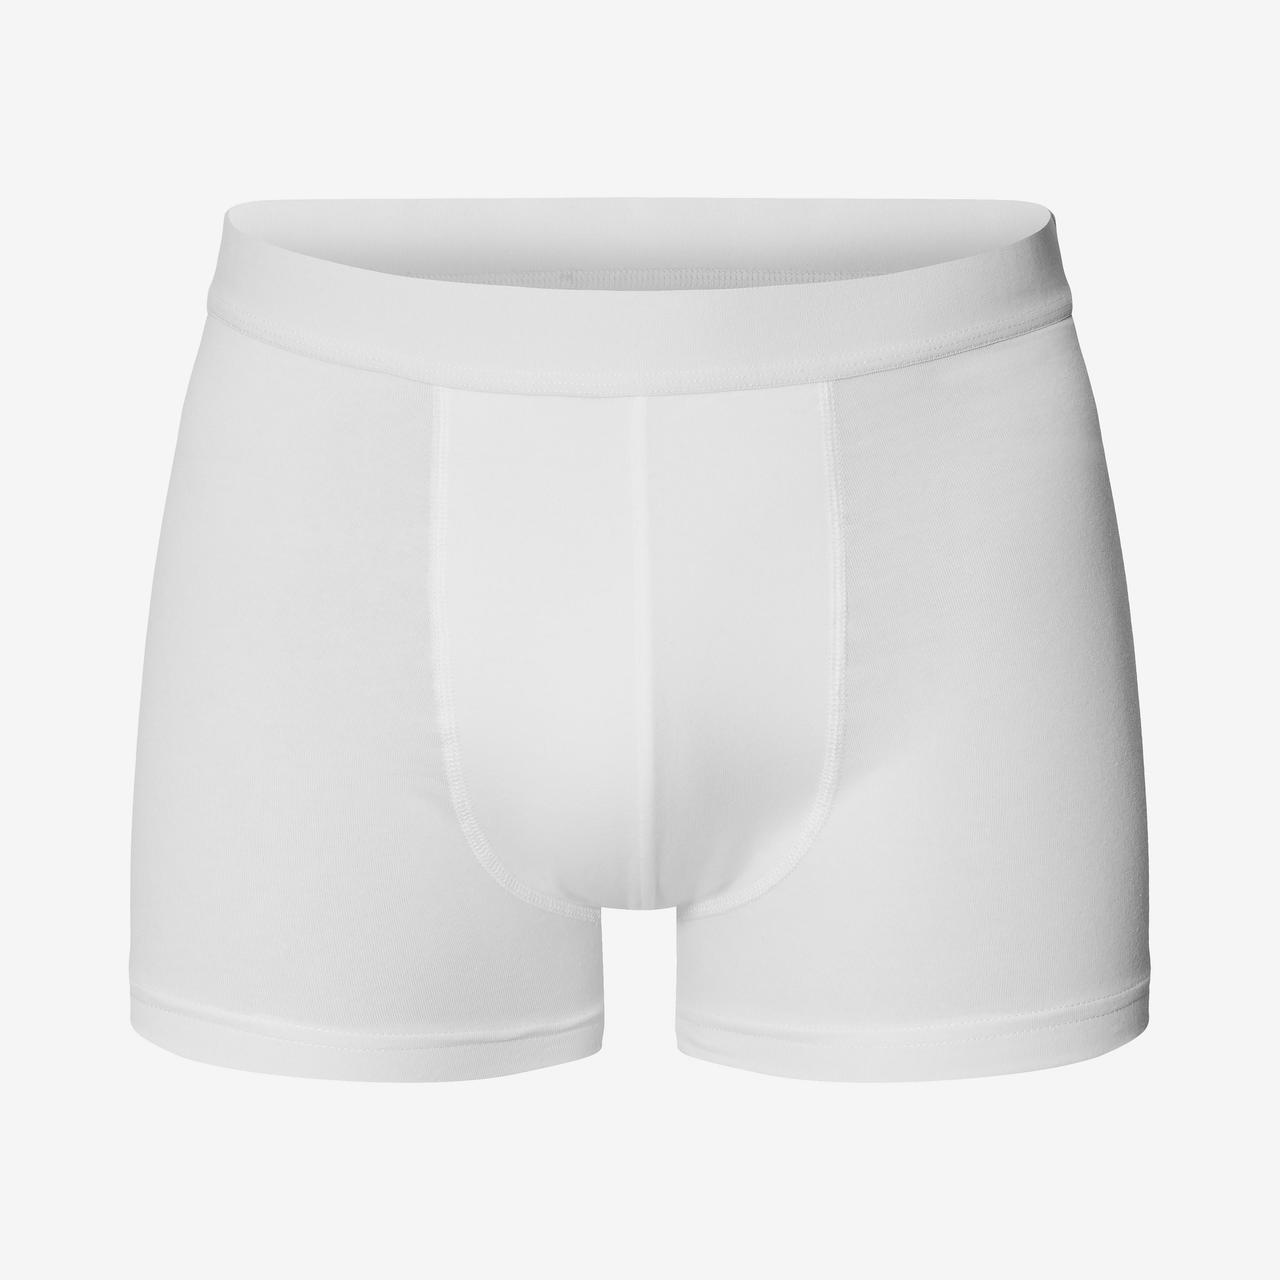 White, Men's Underwear, Boxers, Briefs, & Trunks